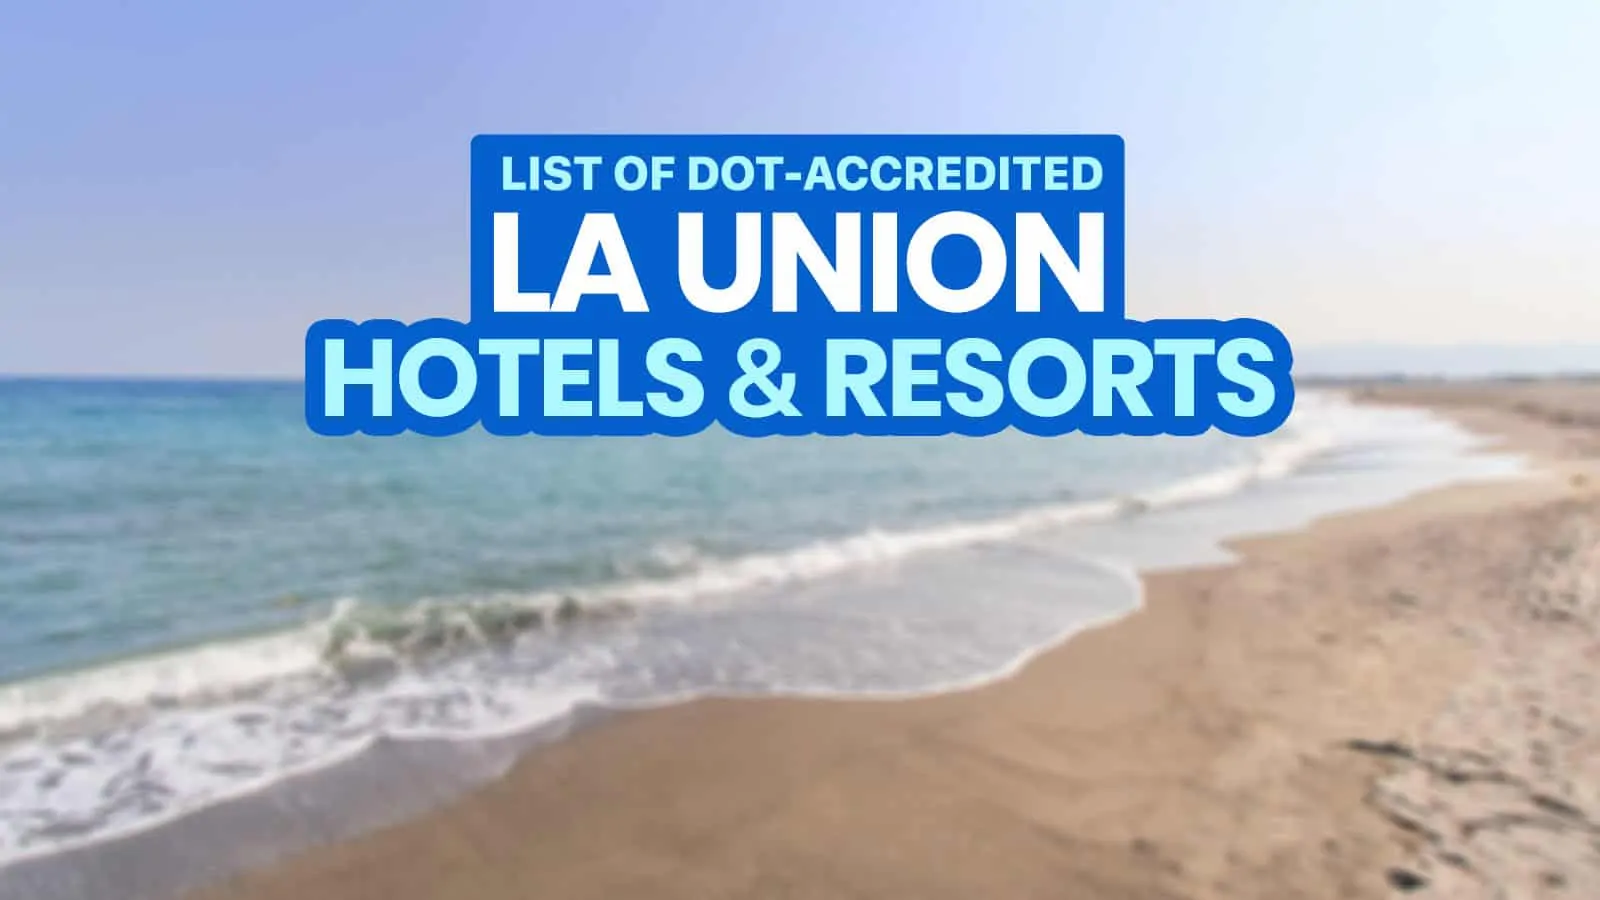 洛杉矶联盟的dot认证酒店和海滩度假村列表